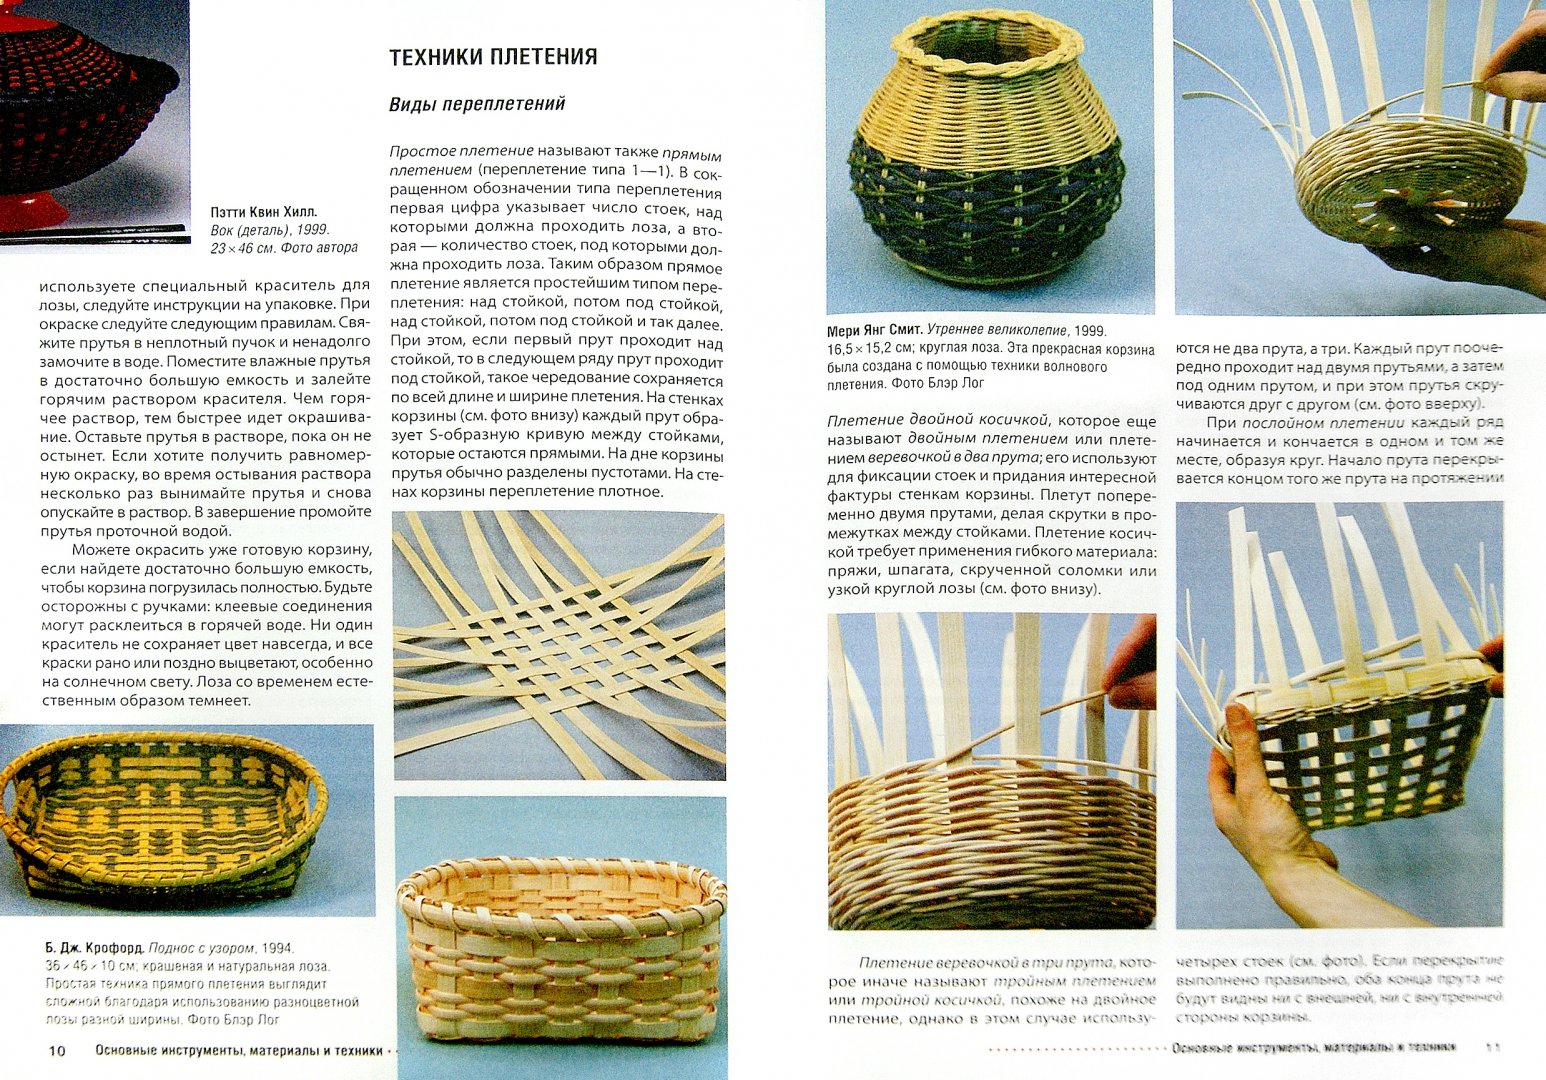 Иллюстрация 1 из 9 для Плетеные корзинки, вазы, кашпо - Б. Крофорд | Лабиринт - книги. Источник: Лабиринт